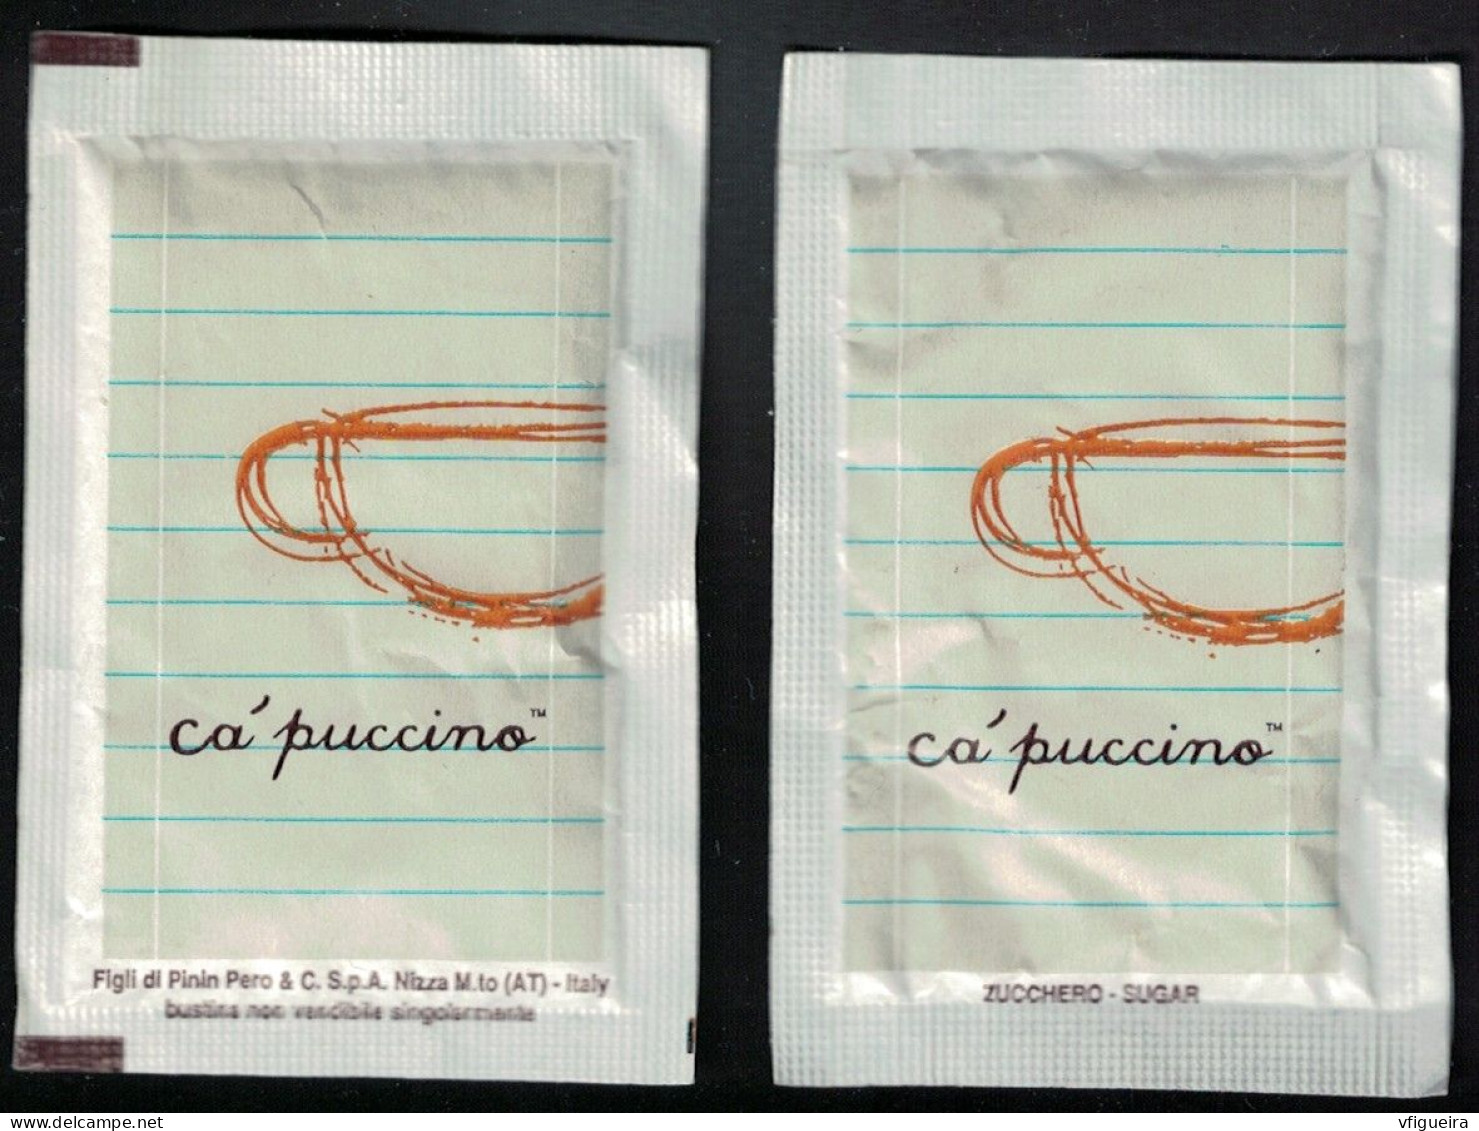 Italie Sachet Sucre Sugar Bag Capuccino Figli Di Pinin Pero White Blanc - Sugars